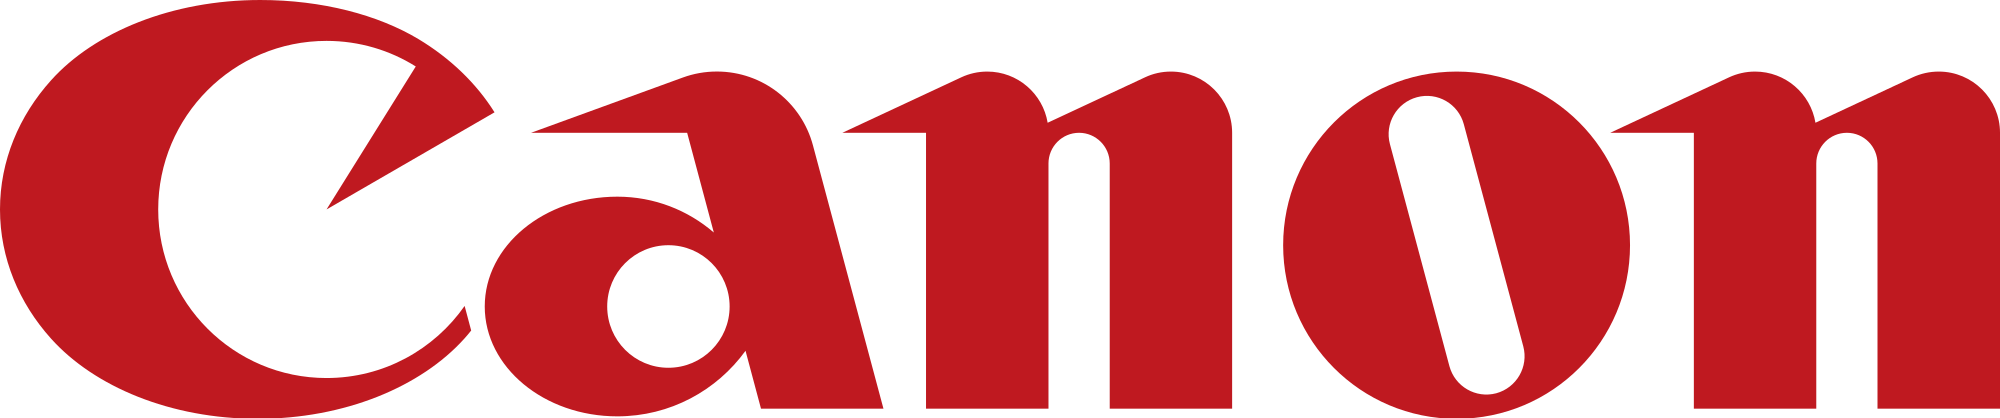 Canon (UK)_logo